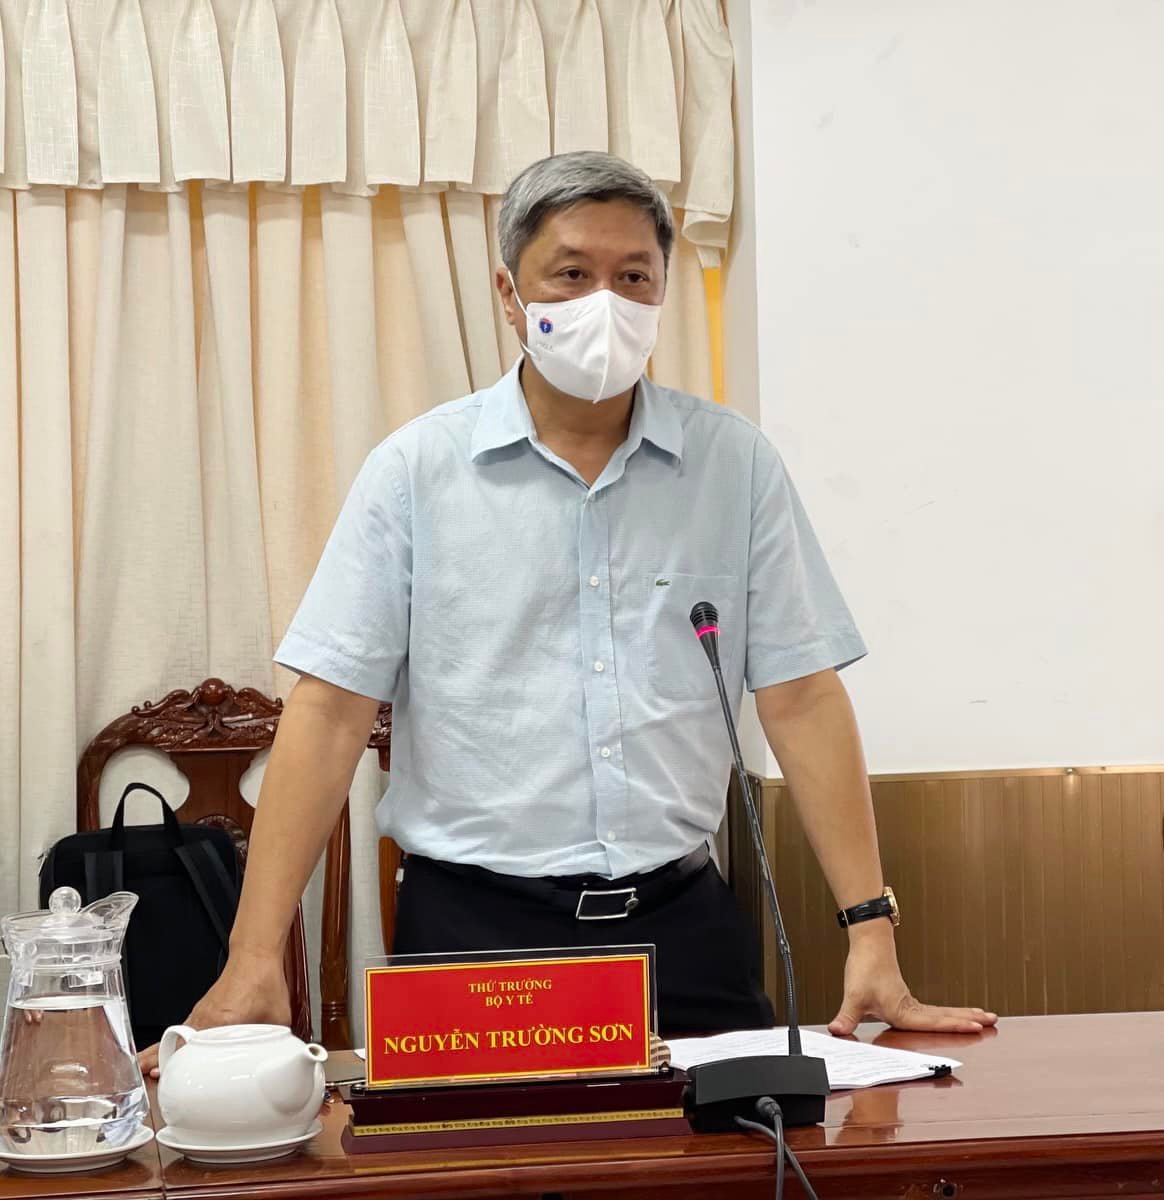 Thứ trưởng Bộ Y tế Nguyễn Trường Sơn kiểm tra công tác chống dịch tại Cần Thơ